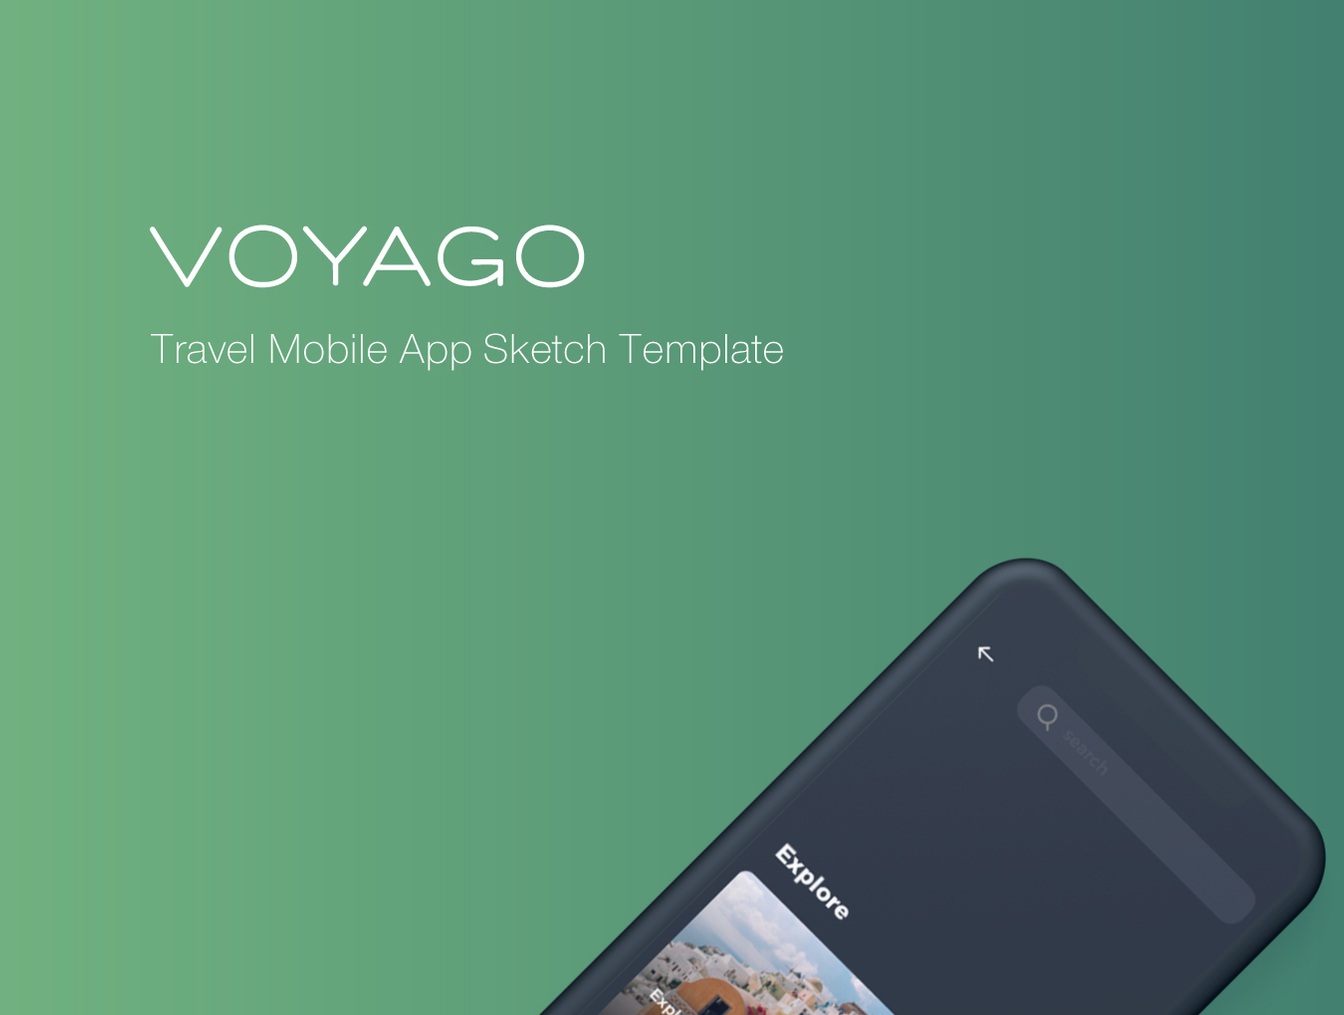 现代化的极简旅行APP UI 工具包 Voyago Travel App插图